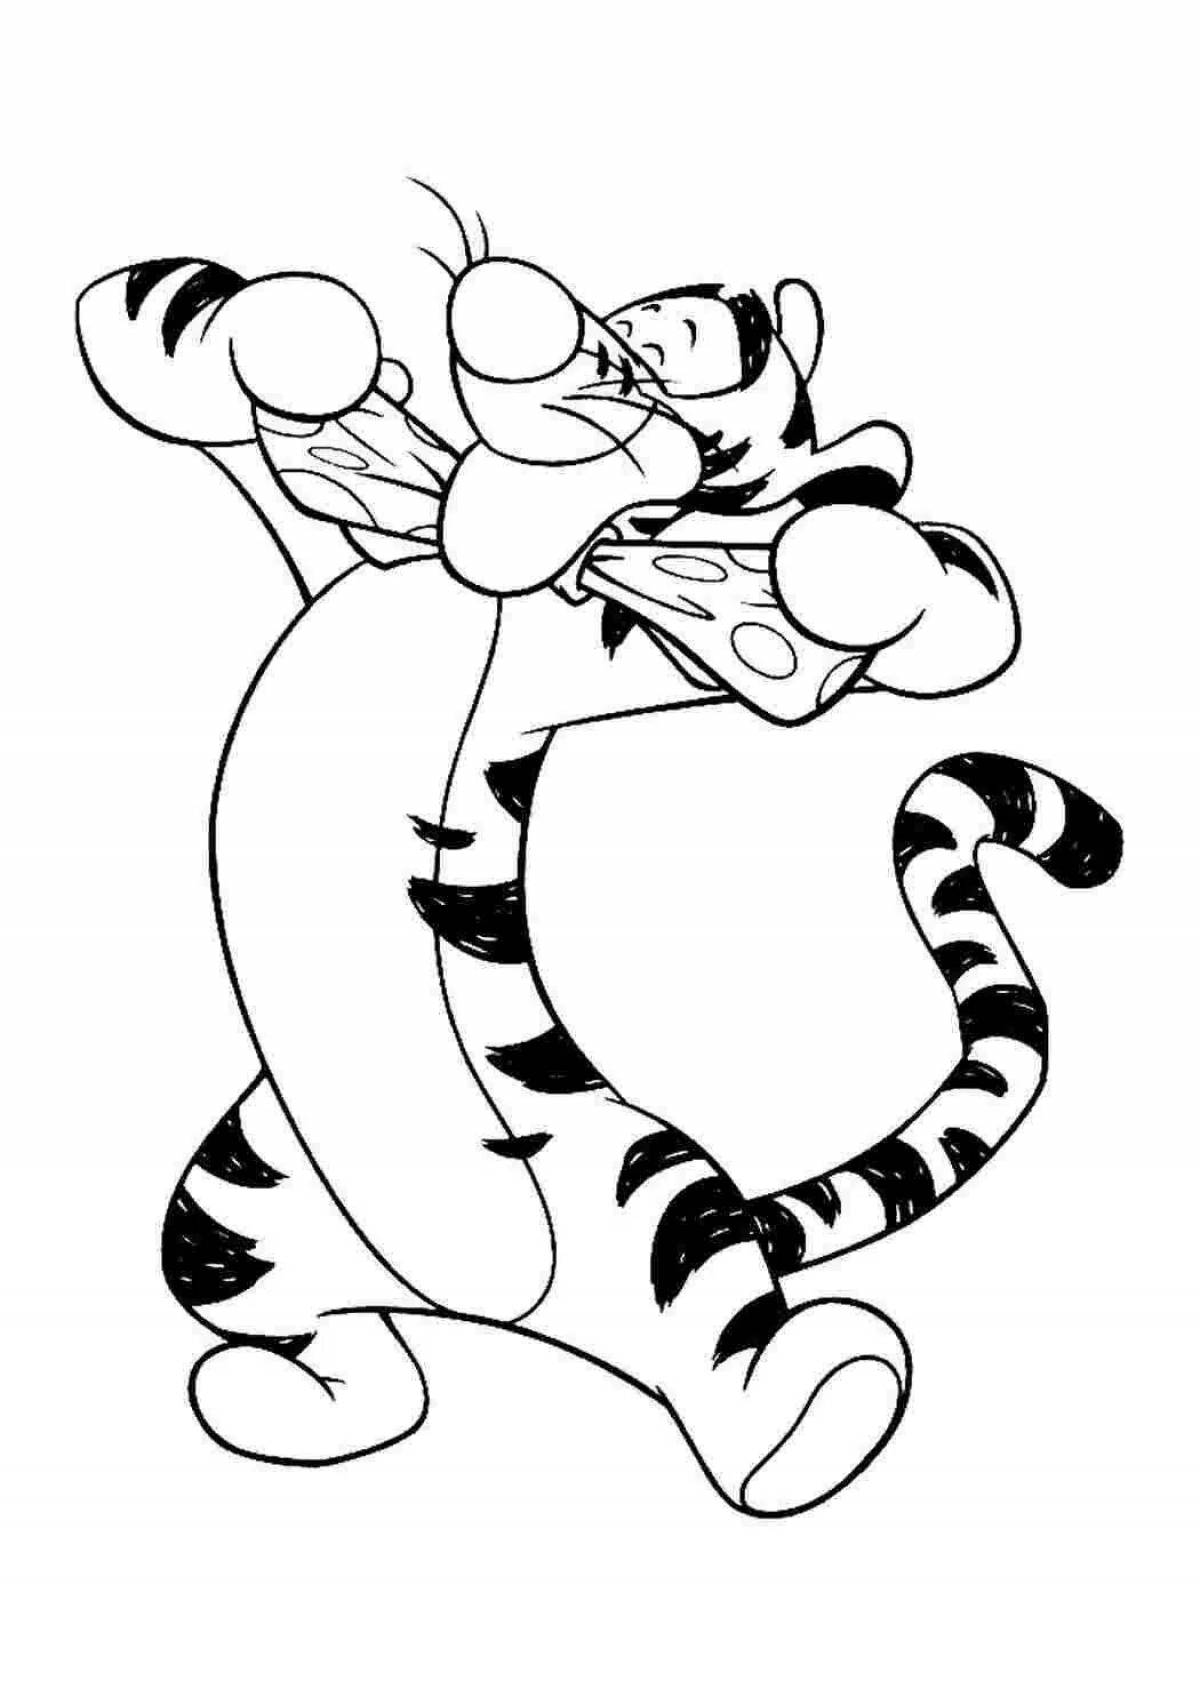 Royal tigress coloring page